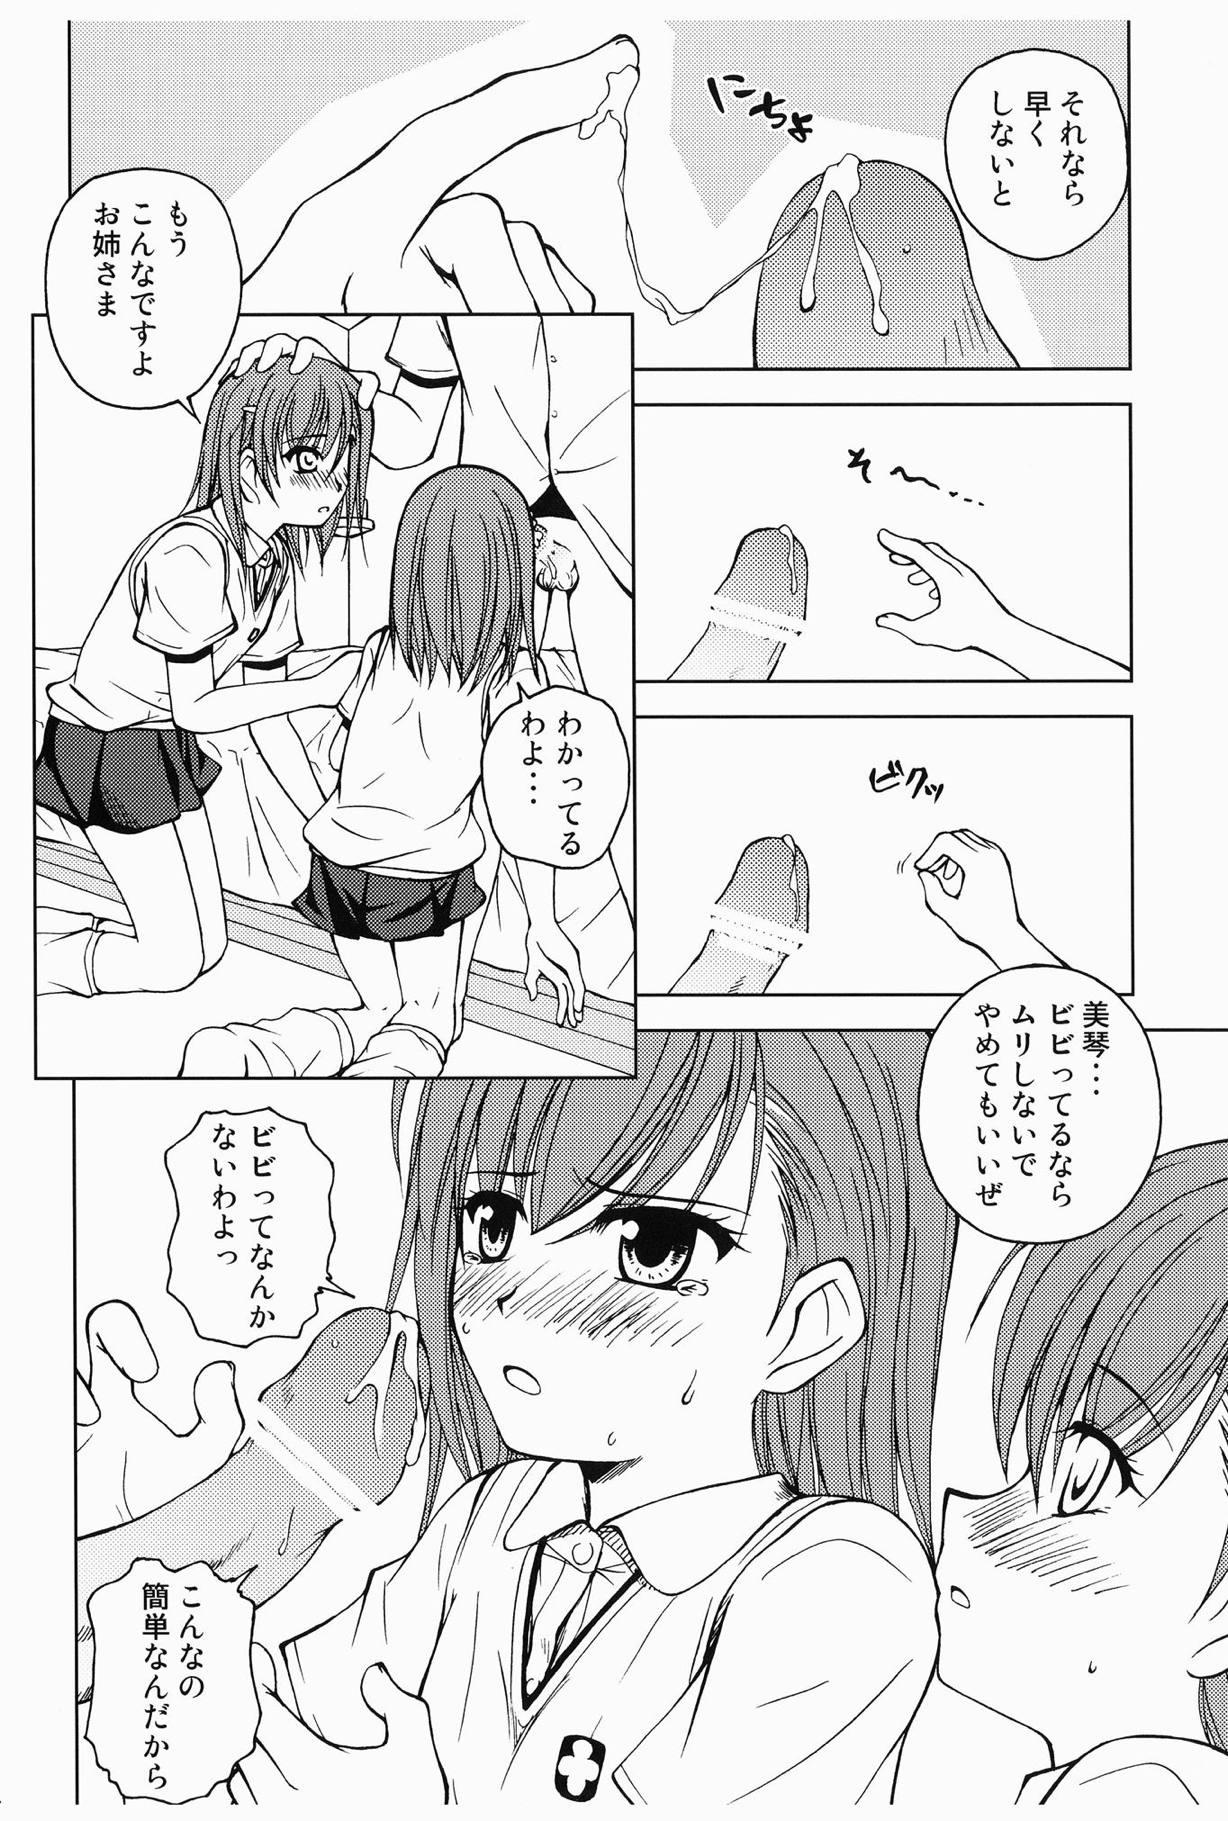 Girlongirl Touma to Misaka to Railgun - Toaru kagaku no railgun Cdmx - Page 5